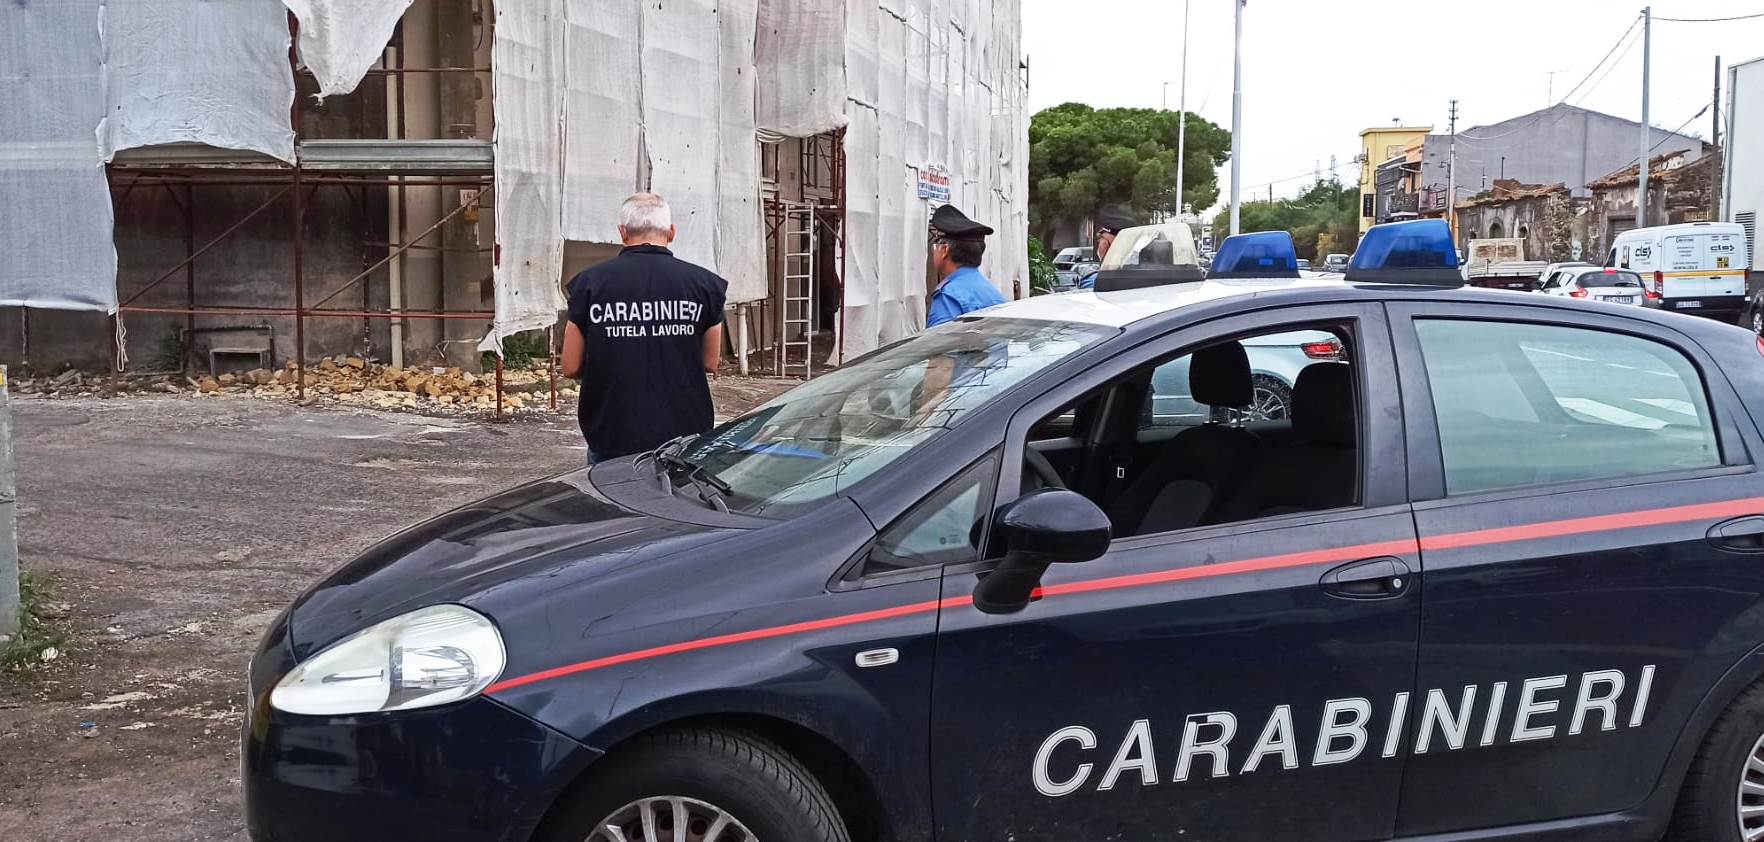 Catania, lotta all’illegalità diffusa: denunce e sanzioni